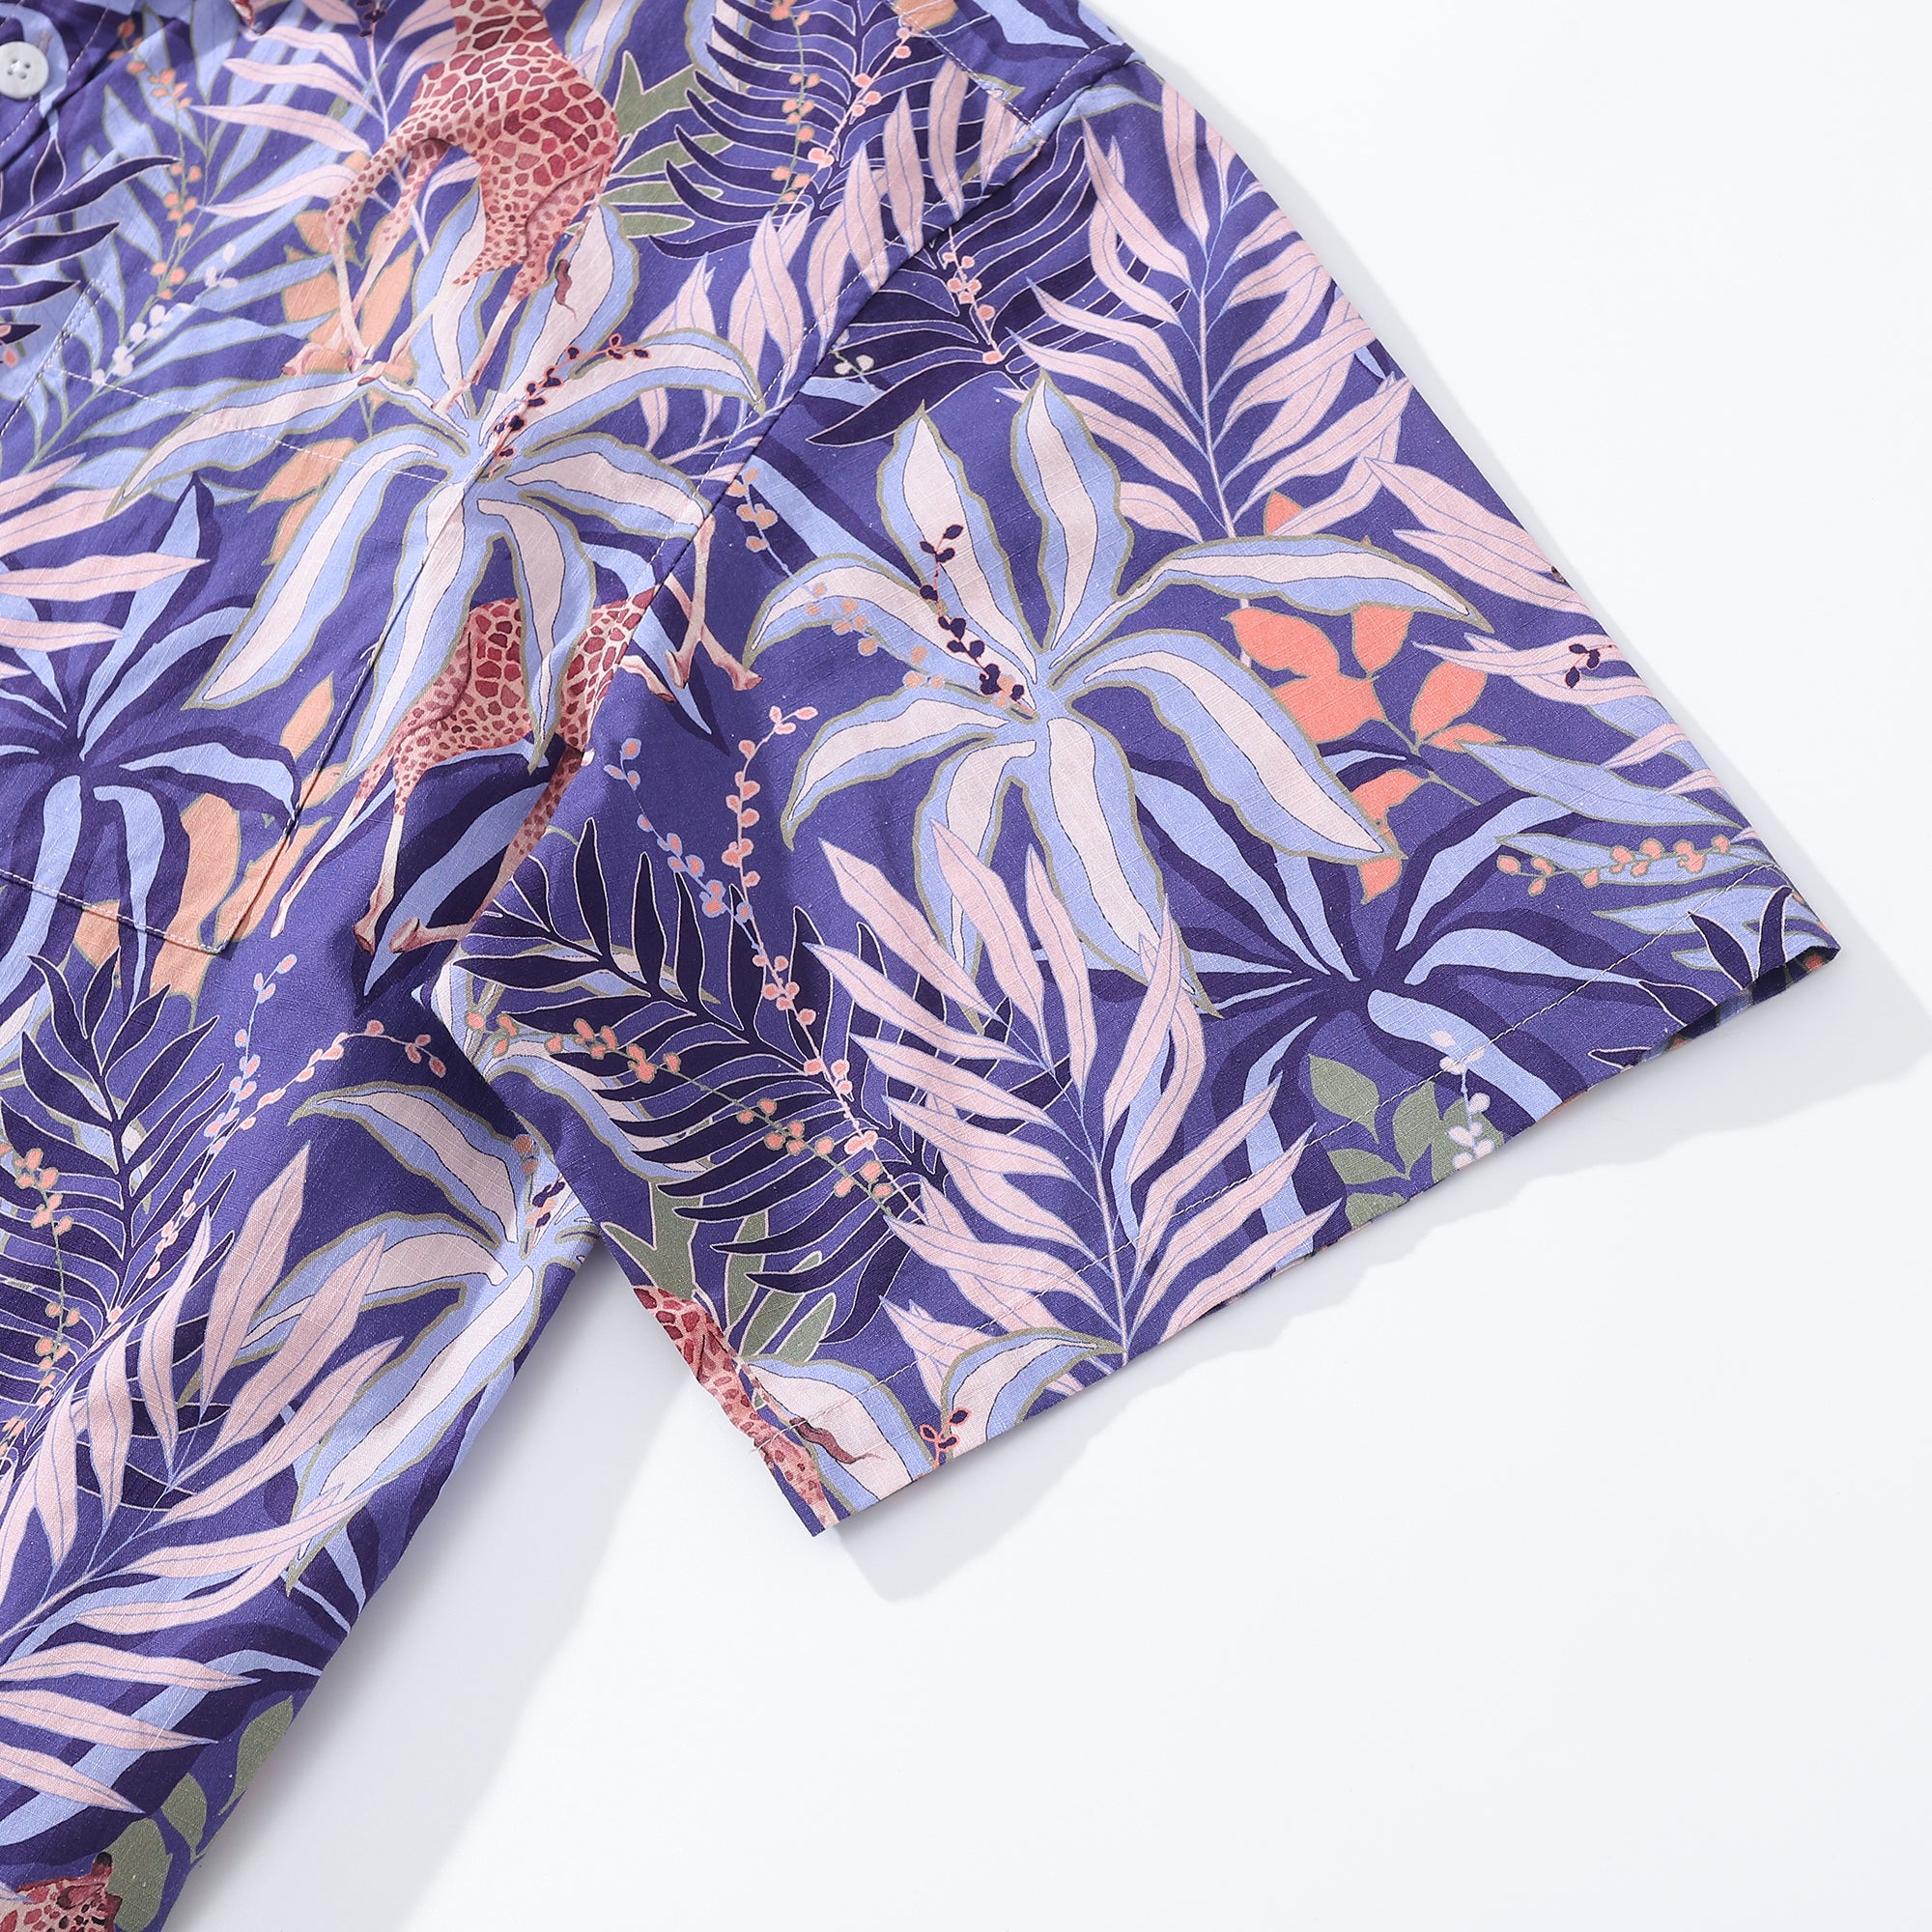 Chemise hawaïenne pour hommes imprimé girafe tropicale par Samantha O'Malley chemise Aloha en coton boutonnée à manches courtes